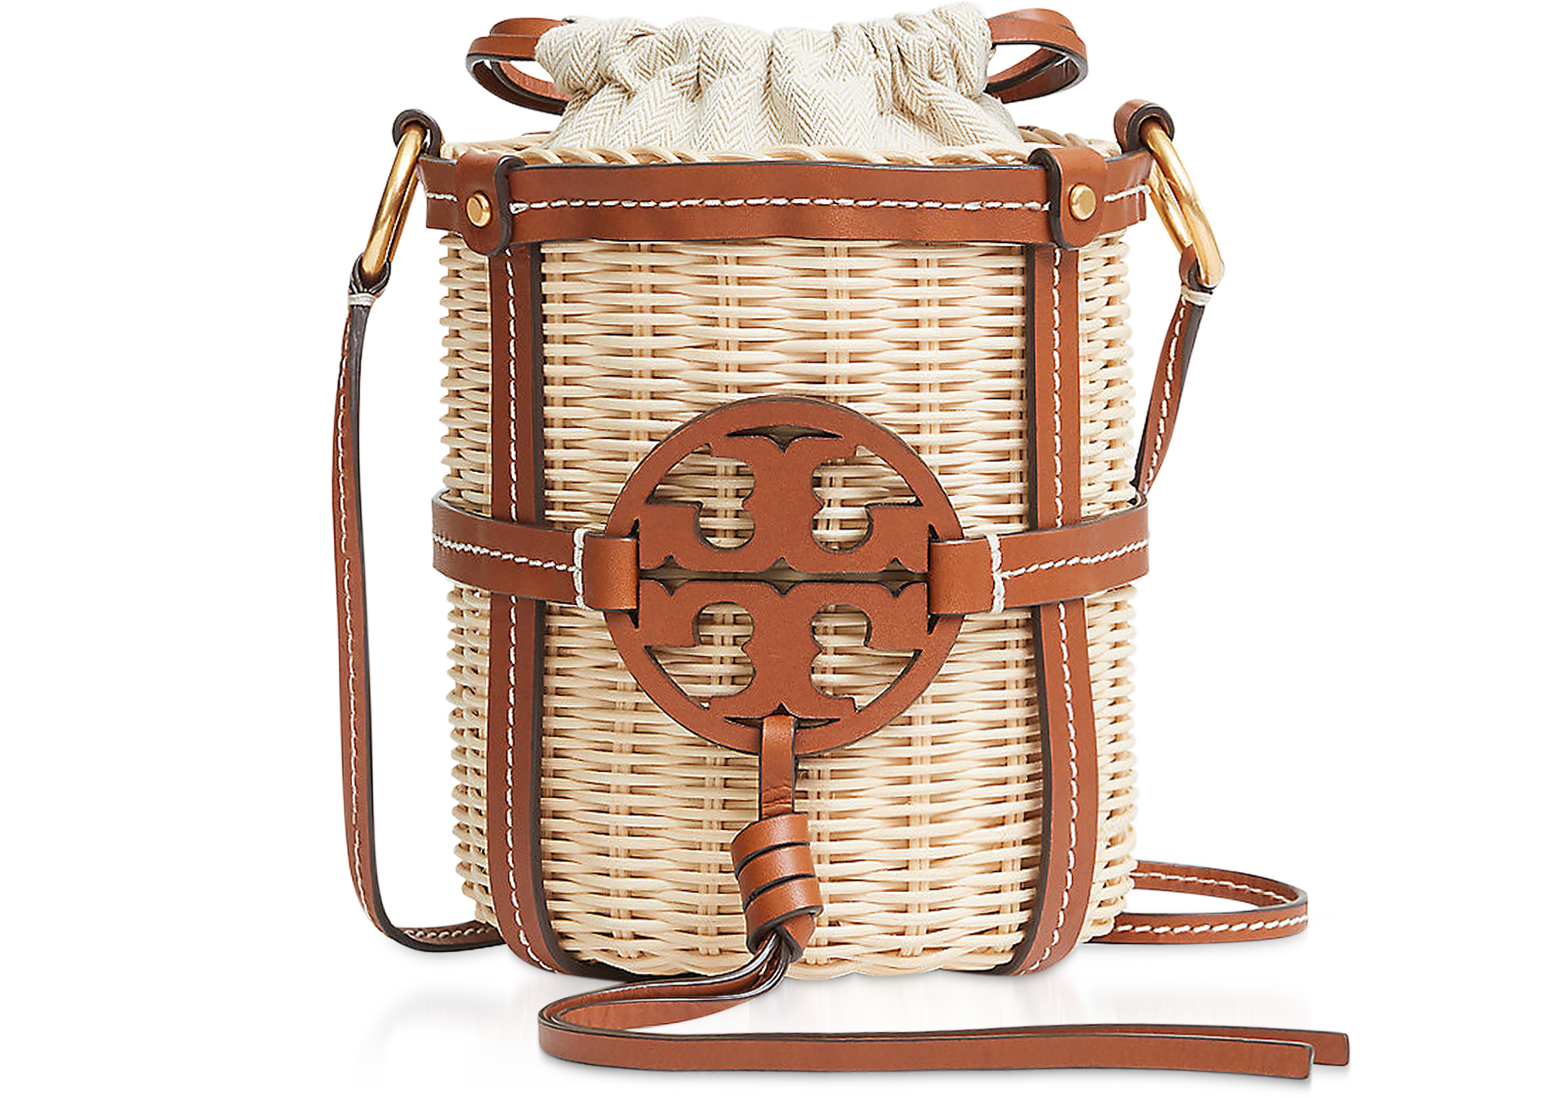 Bucket bags Tory Burch - Miller bucket bag in Light Umber color - 79323905